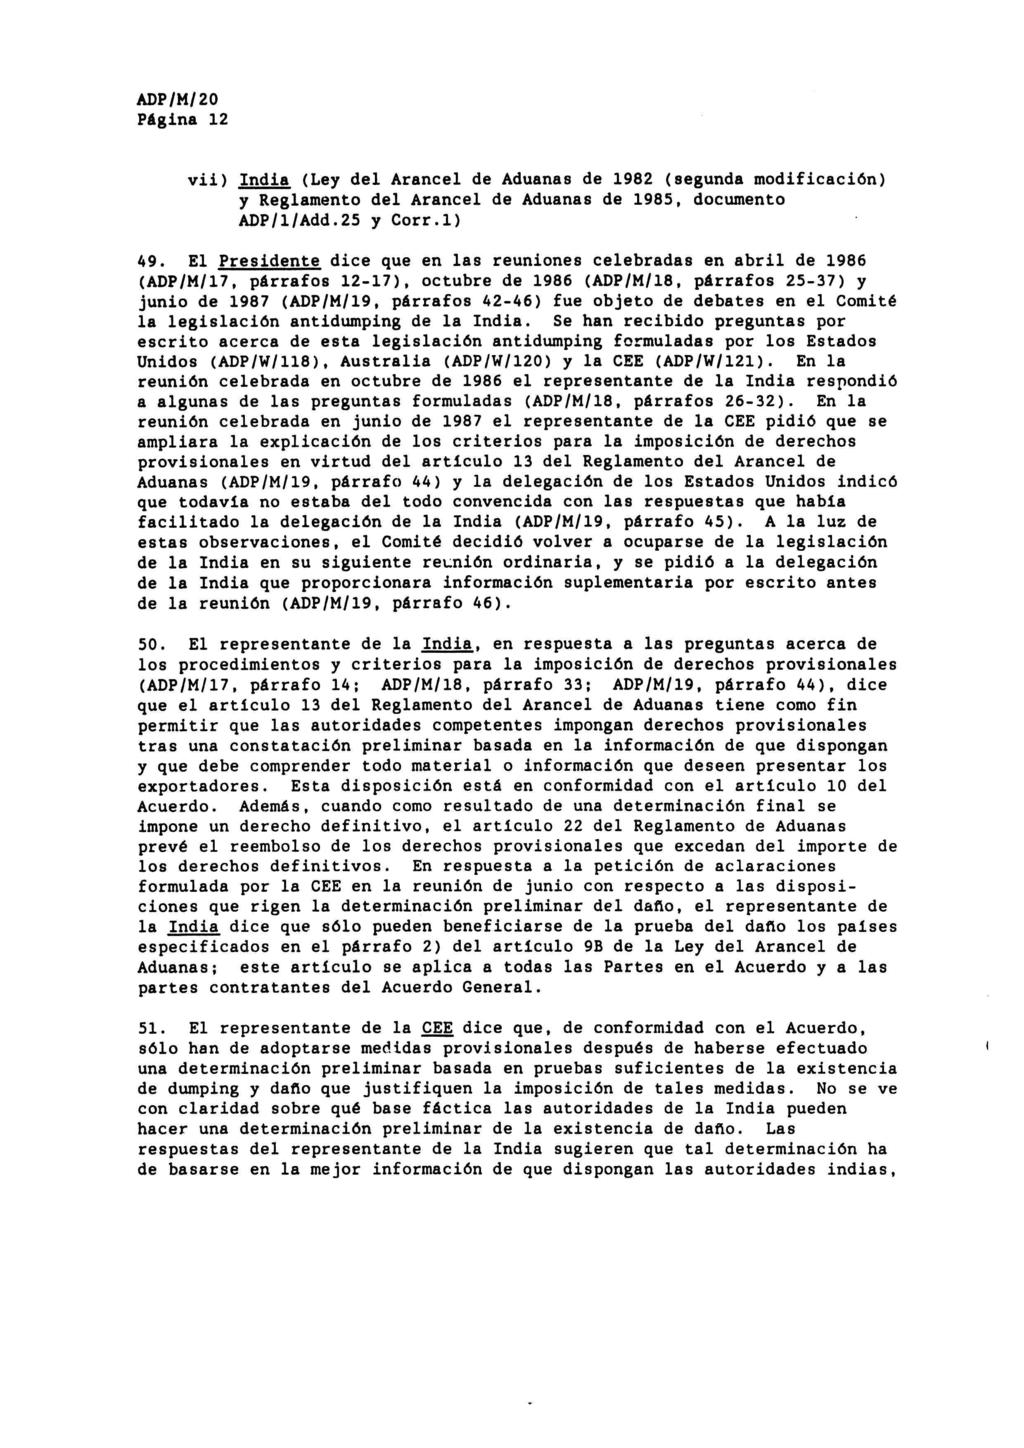 Página 12 vii) India (Ley del Arancel de Aduanas de 1982 (segunda modificación) y Reglamento del Arancel de Aduanas de 1985, documento ADP/l/Add.25 y Corr.l) 49.